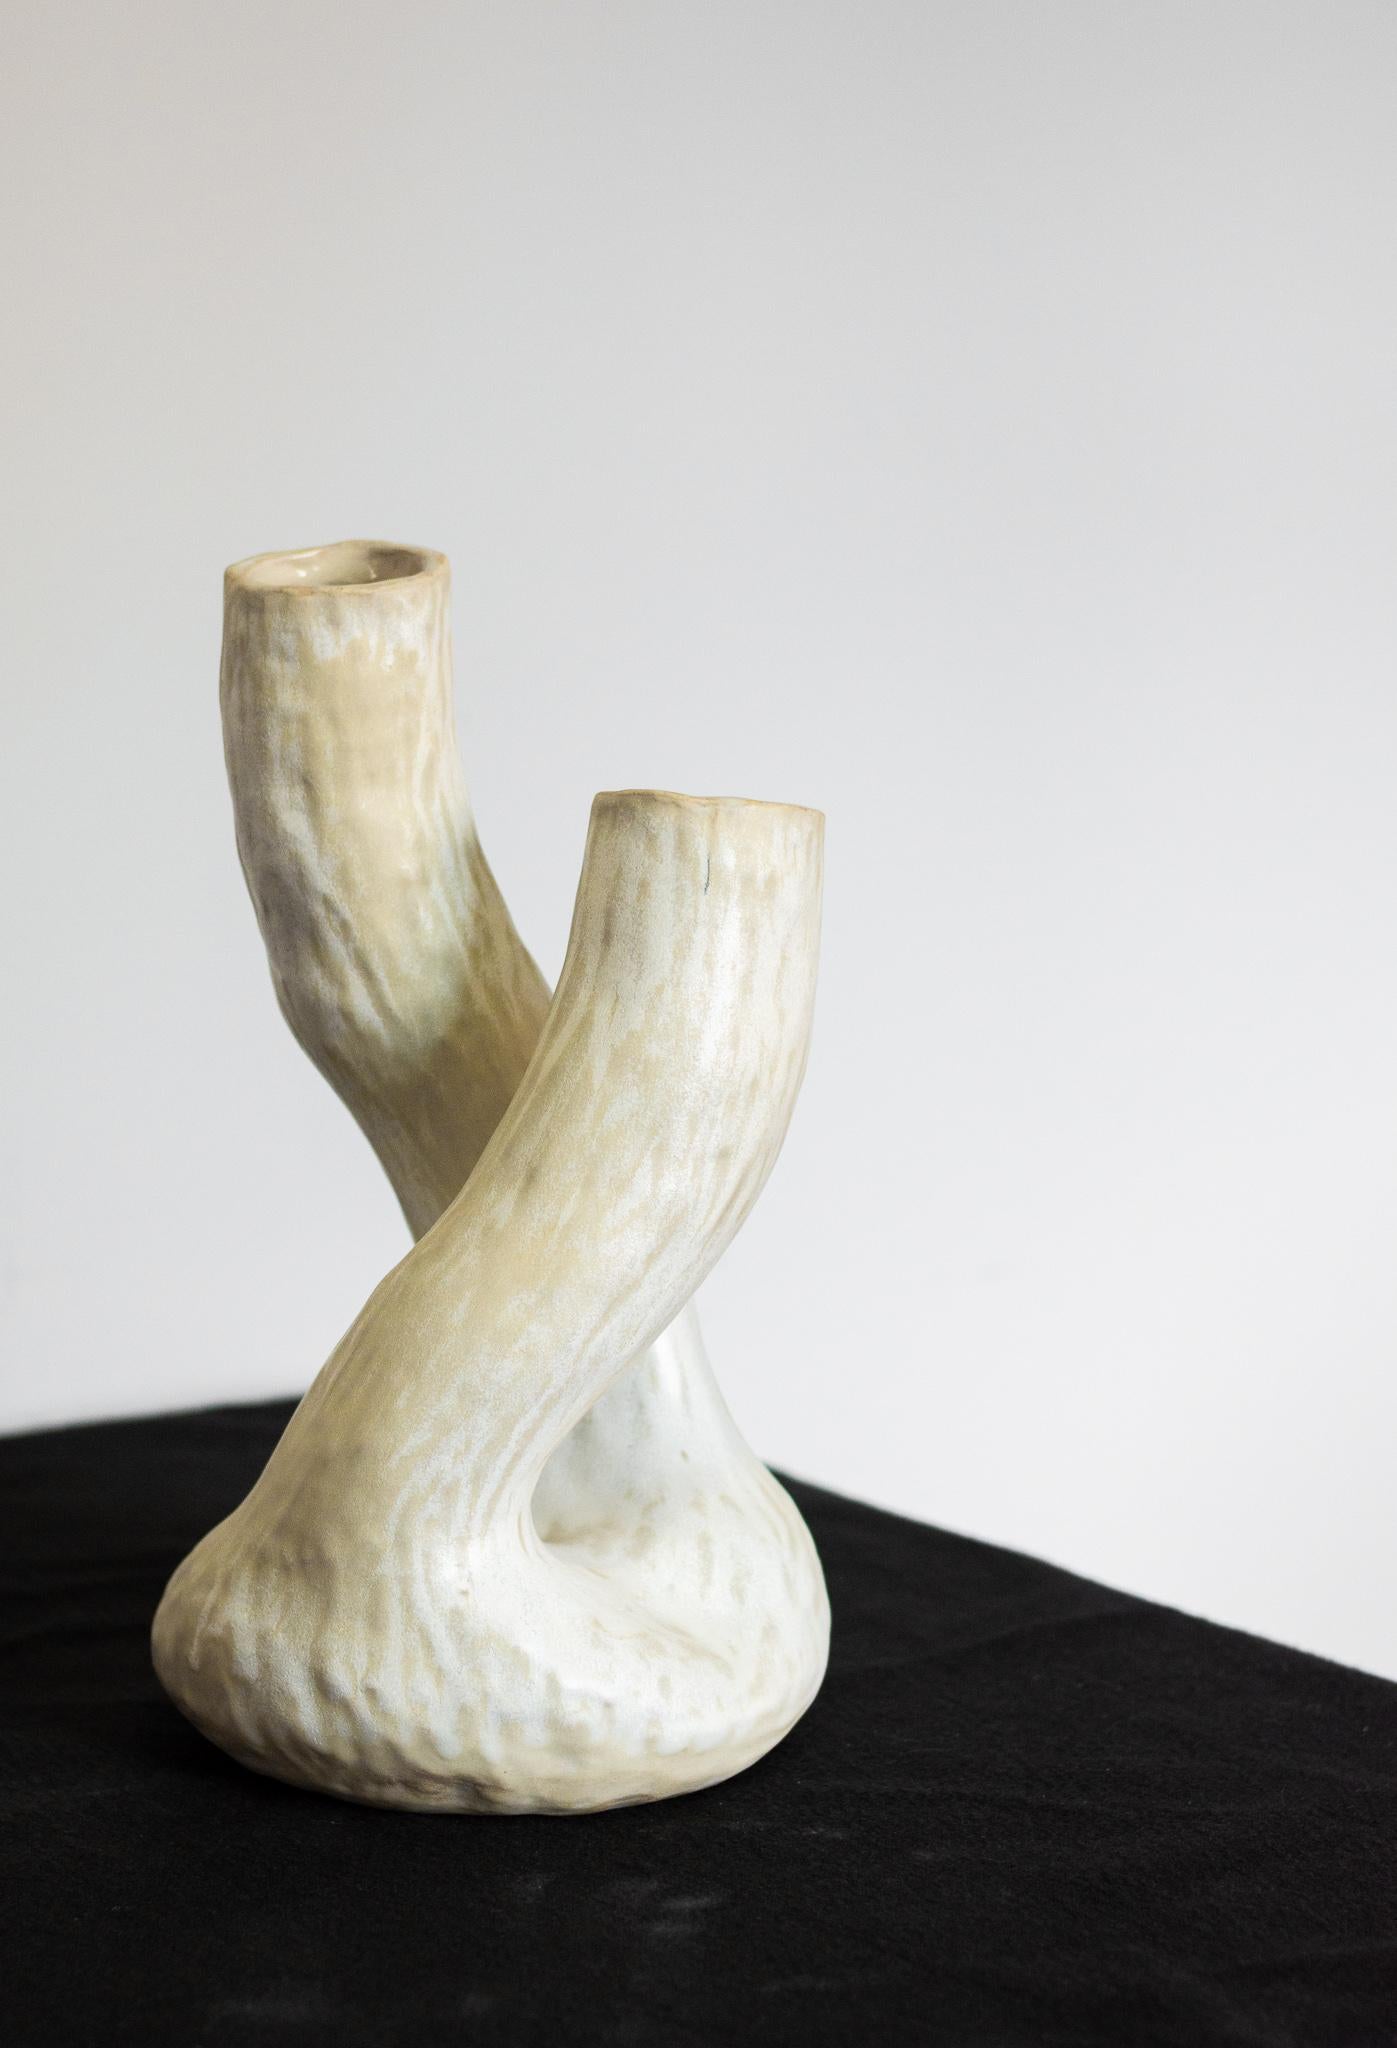 Le vase de la série Alba, en particulier le vase N.4, est une pièce unique qui respecte le processus artisanal. Fabriqué sans moule, chaque vase absorbe les contours et les textures distincts de la main de l'artiste, ce qui donne une forme nette et